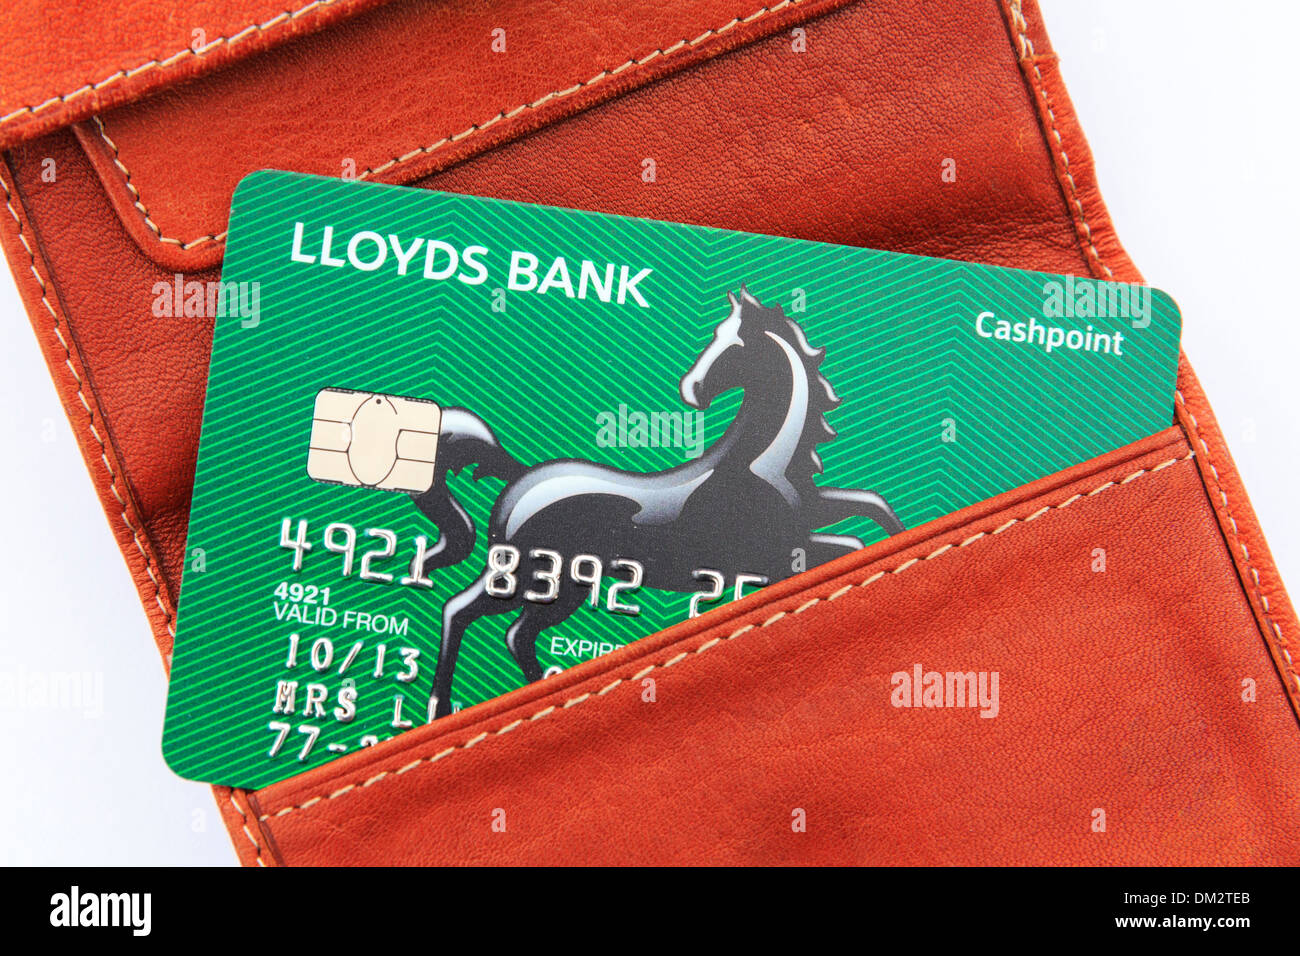 Nouveau distributeur de billets de la Banque Lloyds carte dans un portefeuille en cuir brun sur un fond blanc. England, UK, Grande-Bretagne, Europe Banque D'Images